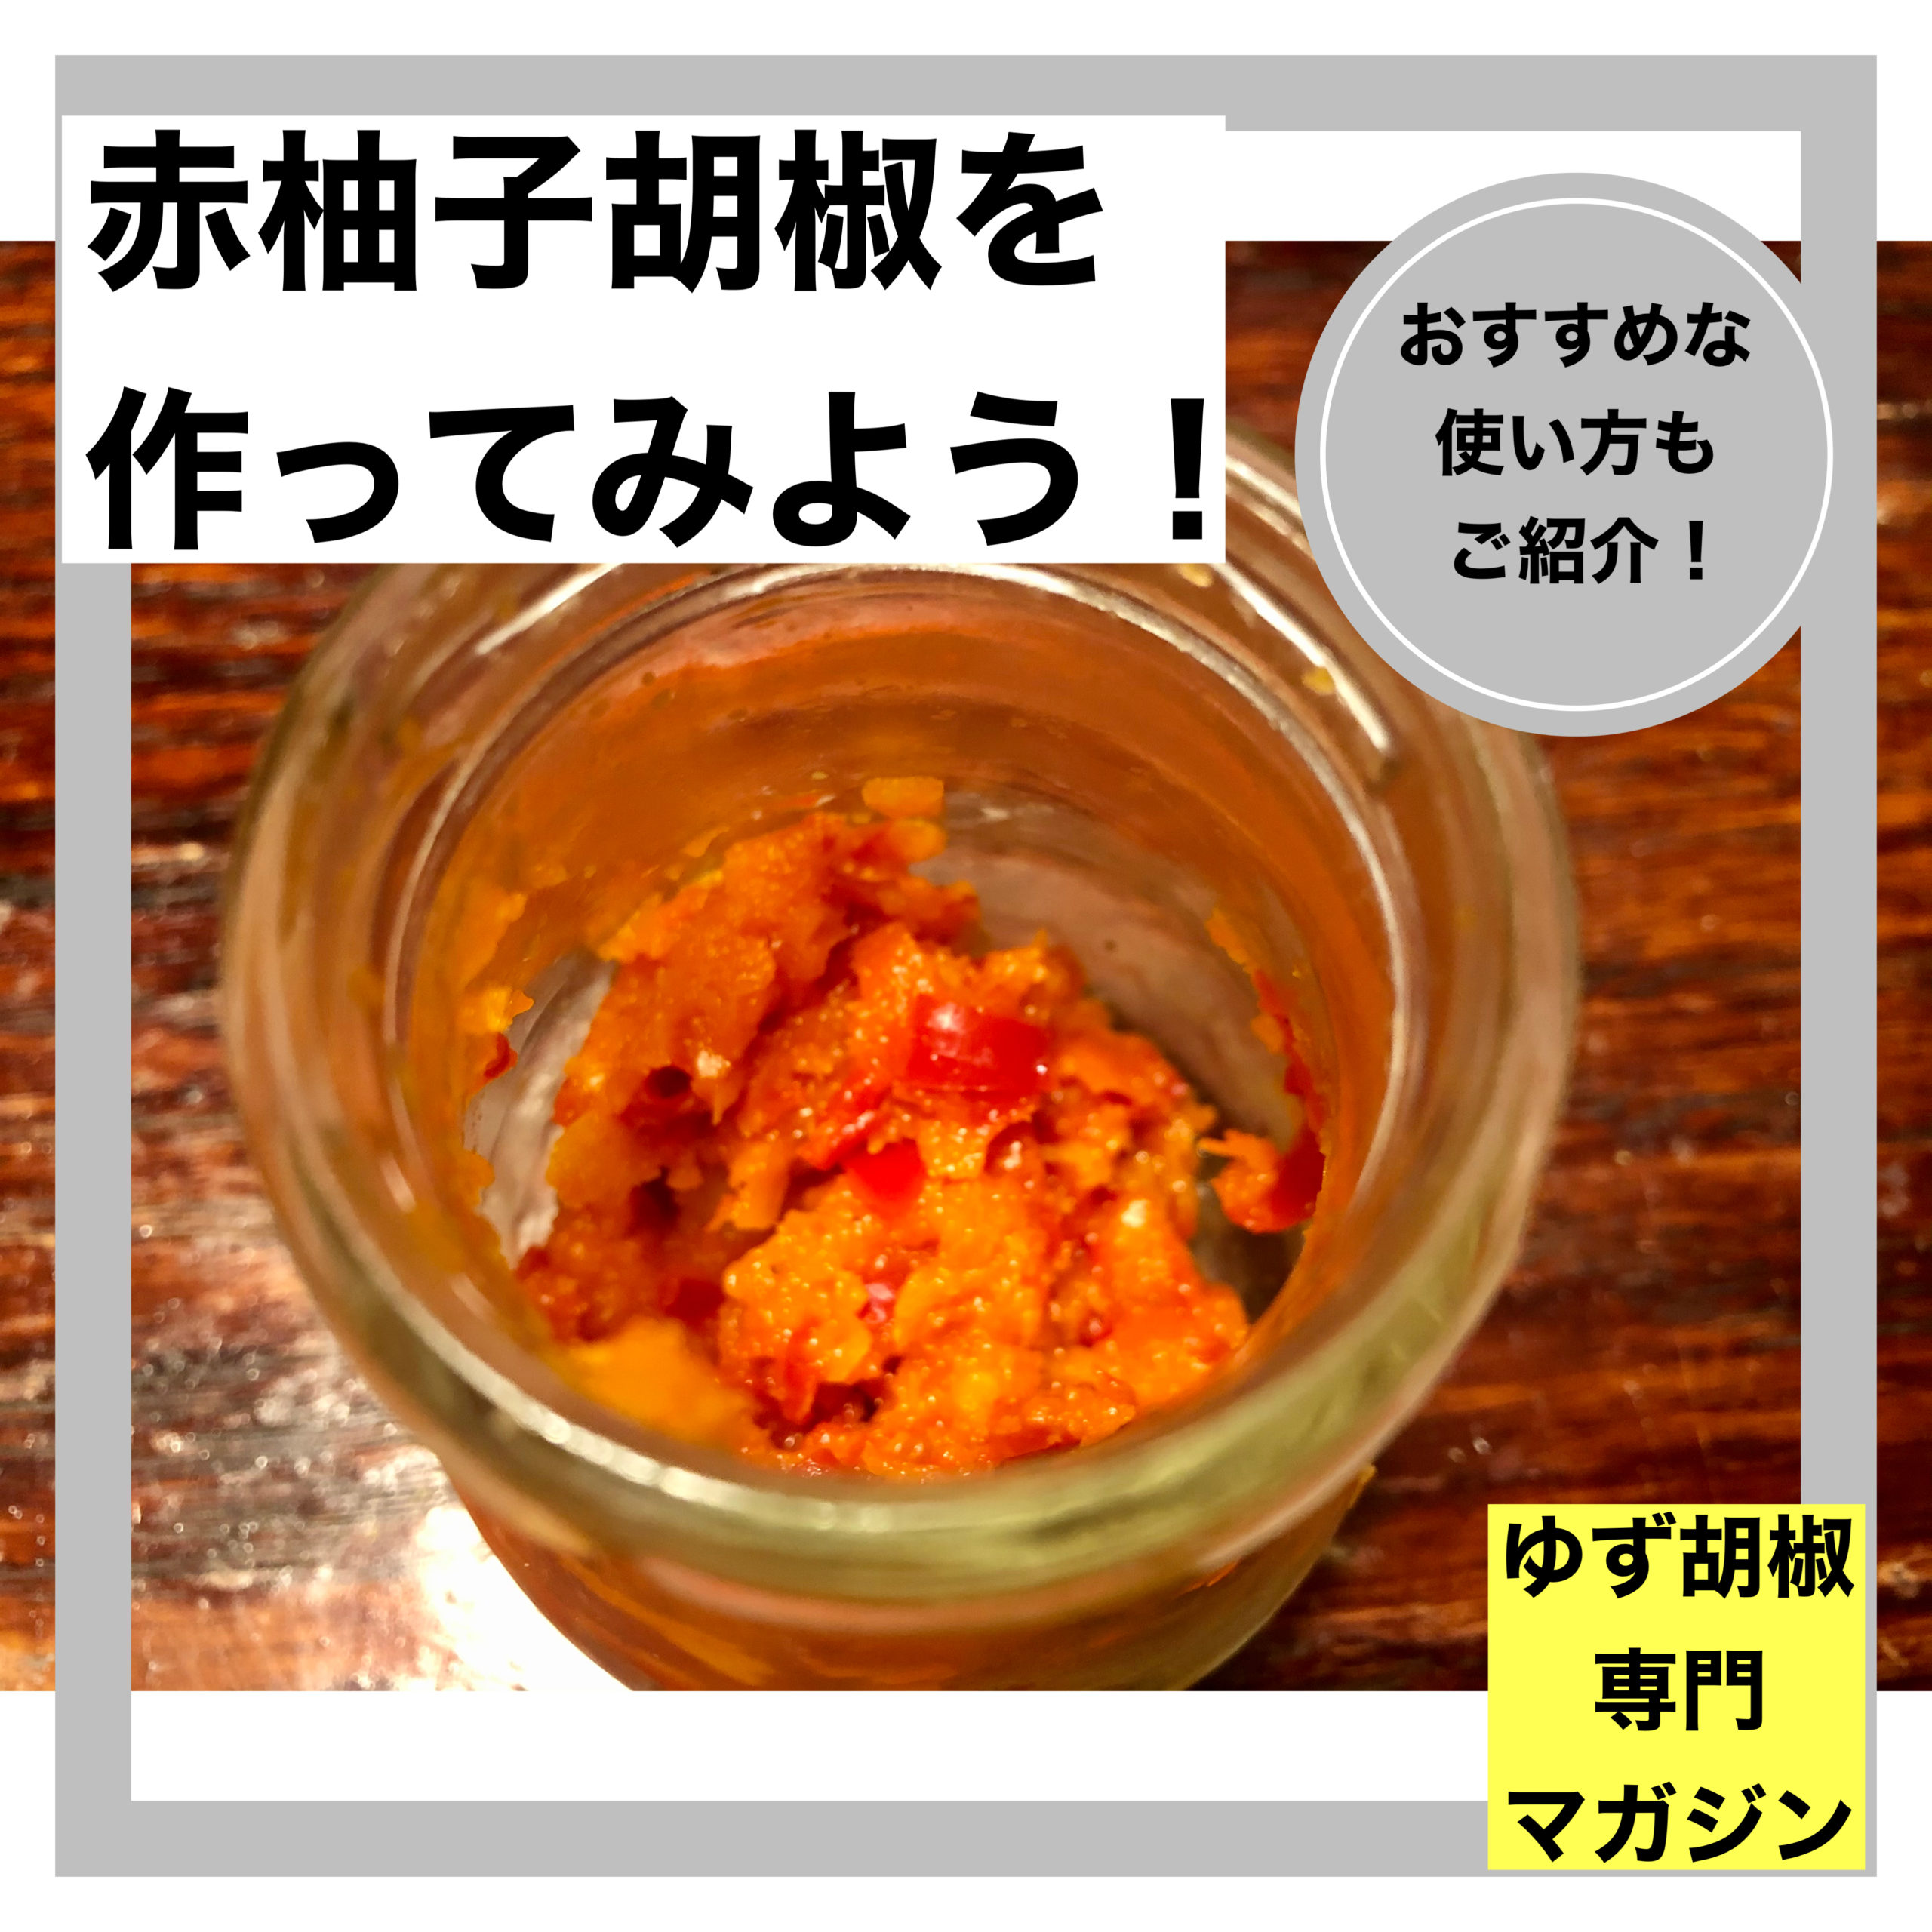 赤柚子胡椒の作り方 おすすめな使い方もご紹介 ゆず胡椒専門マガジン